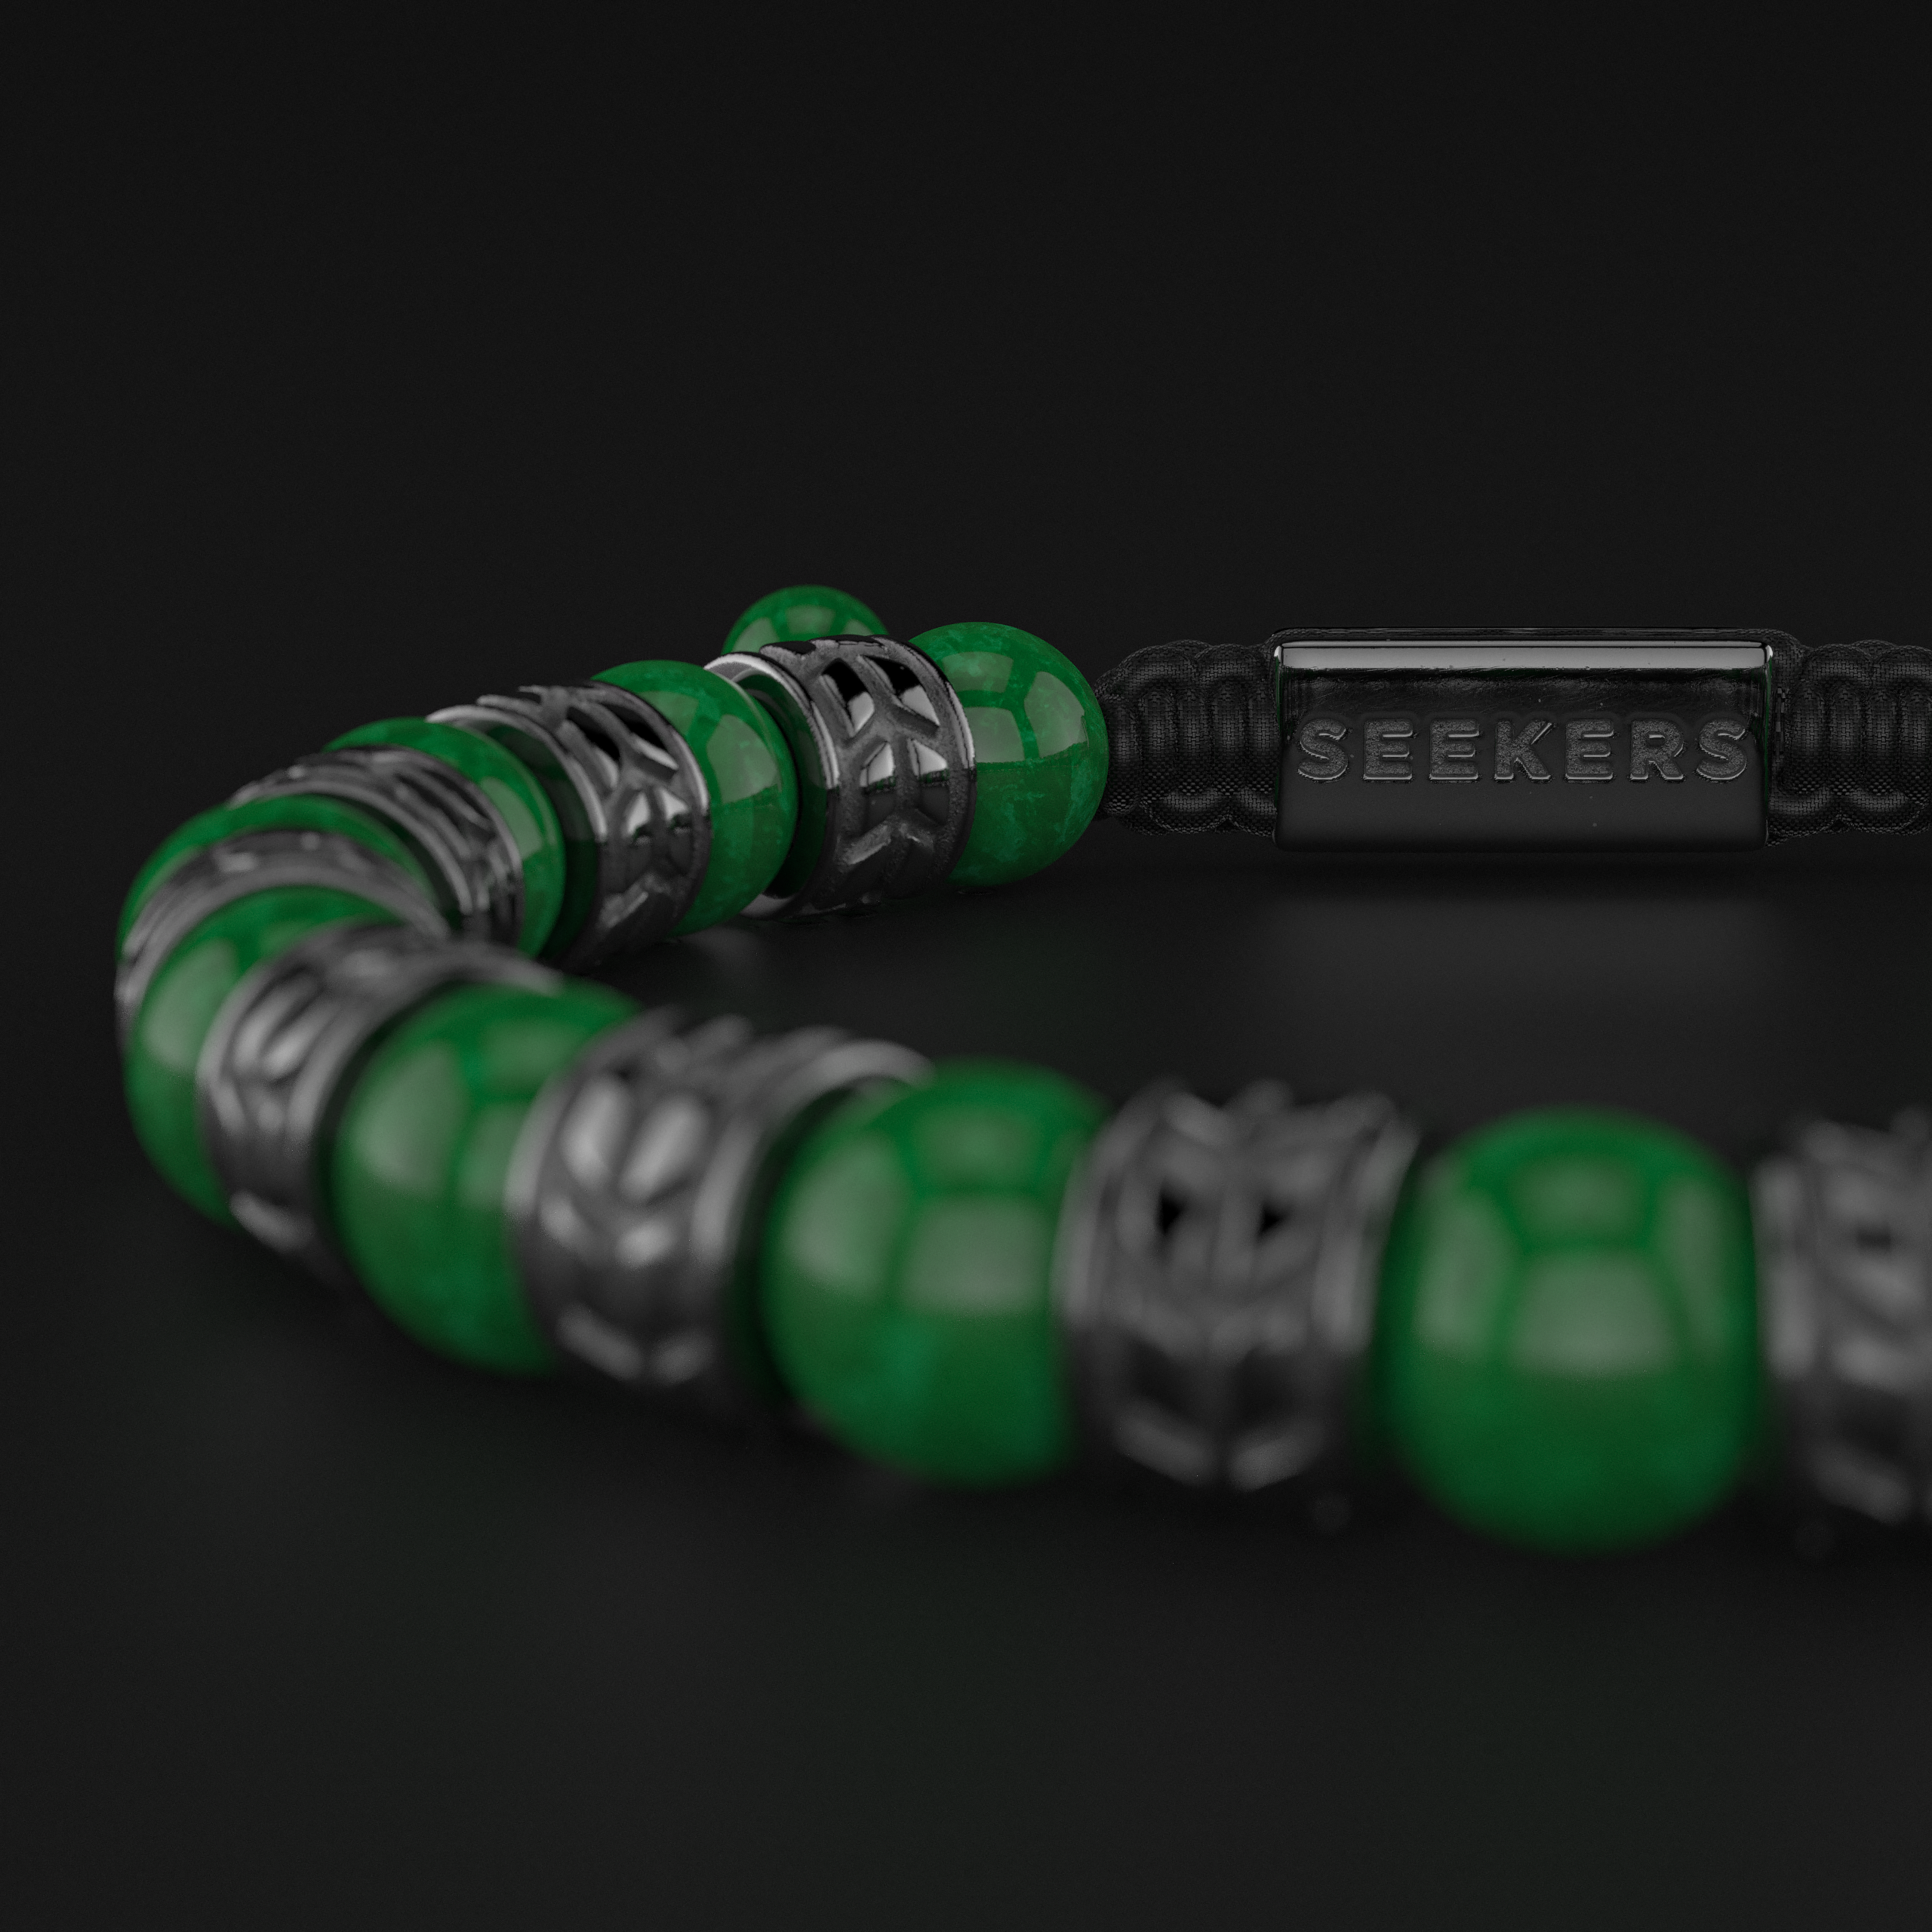 Emerald Jade Bracelet 8mm | Royale